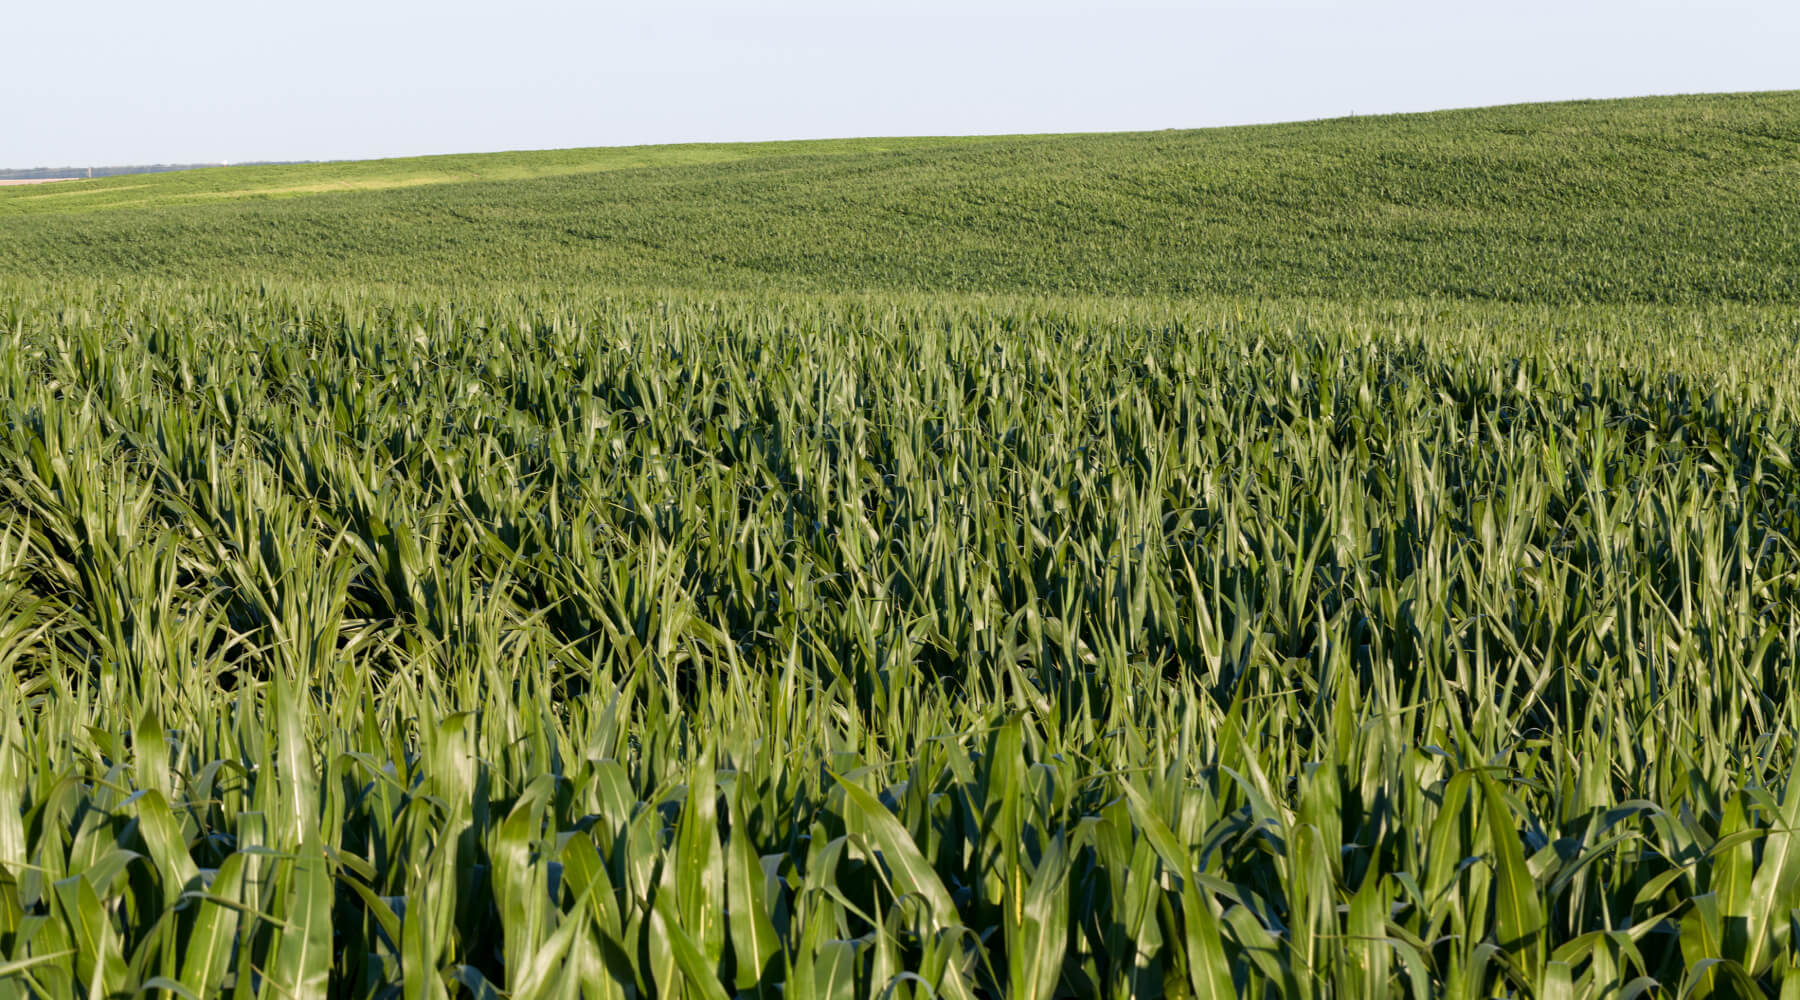 Huge, rolling fields of corn